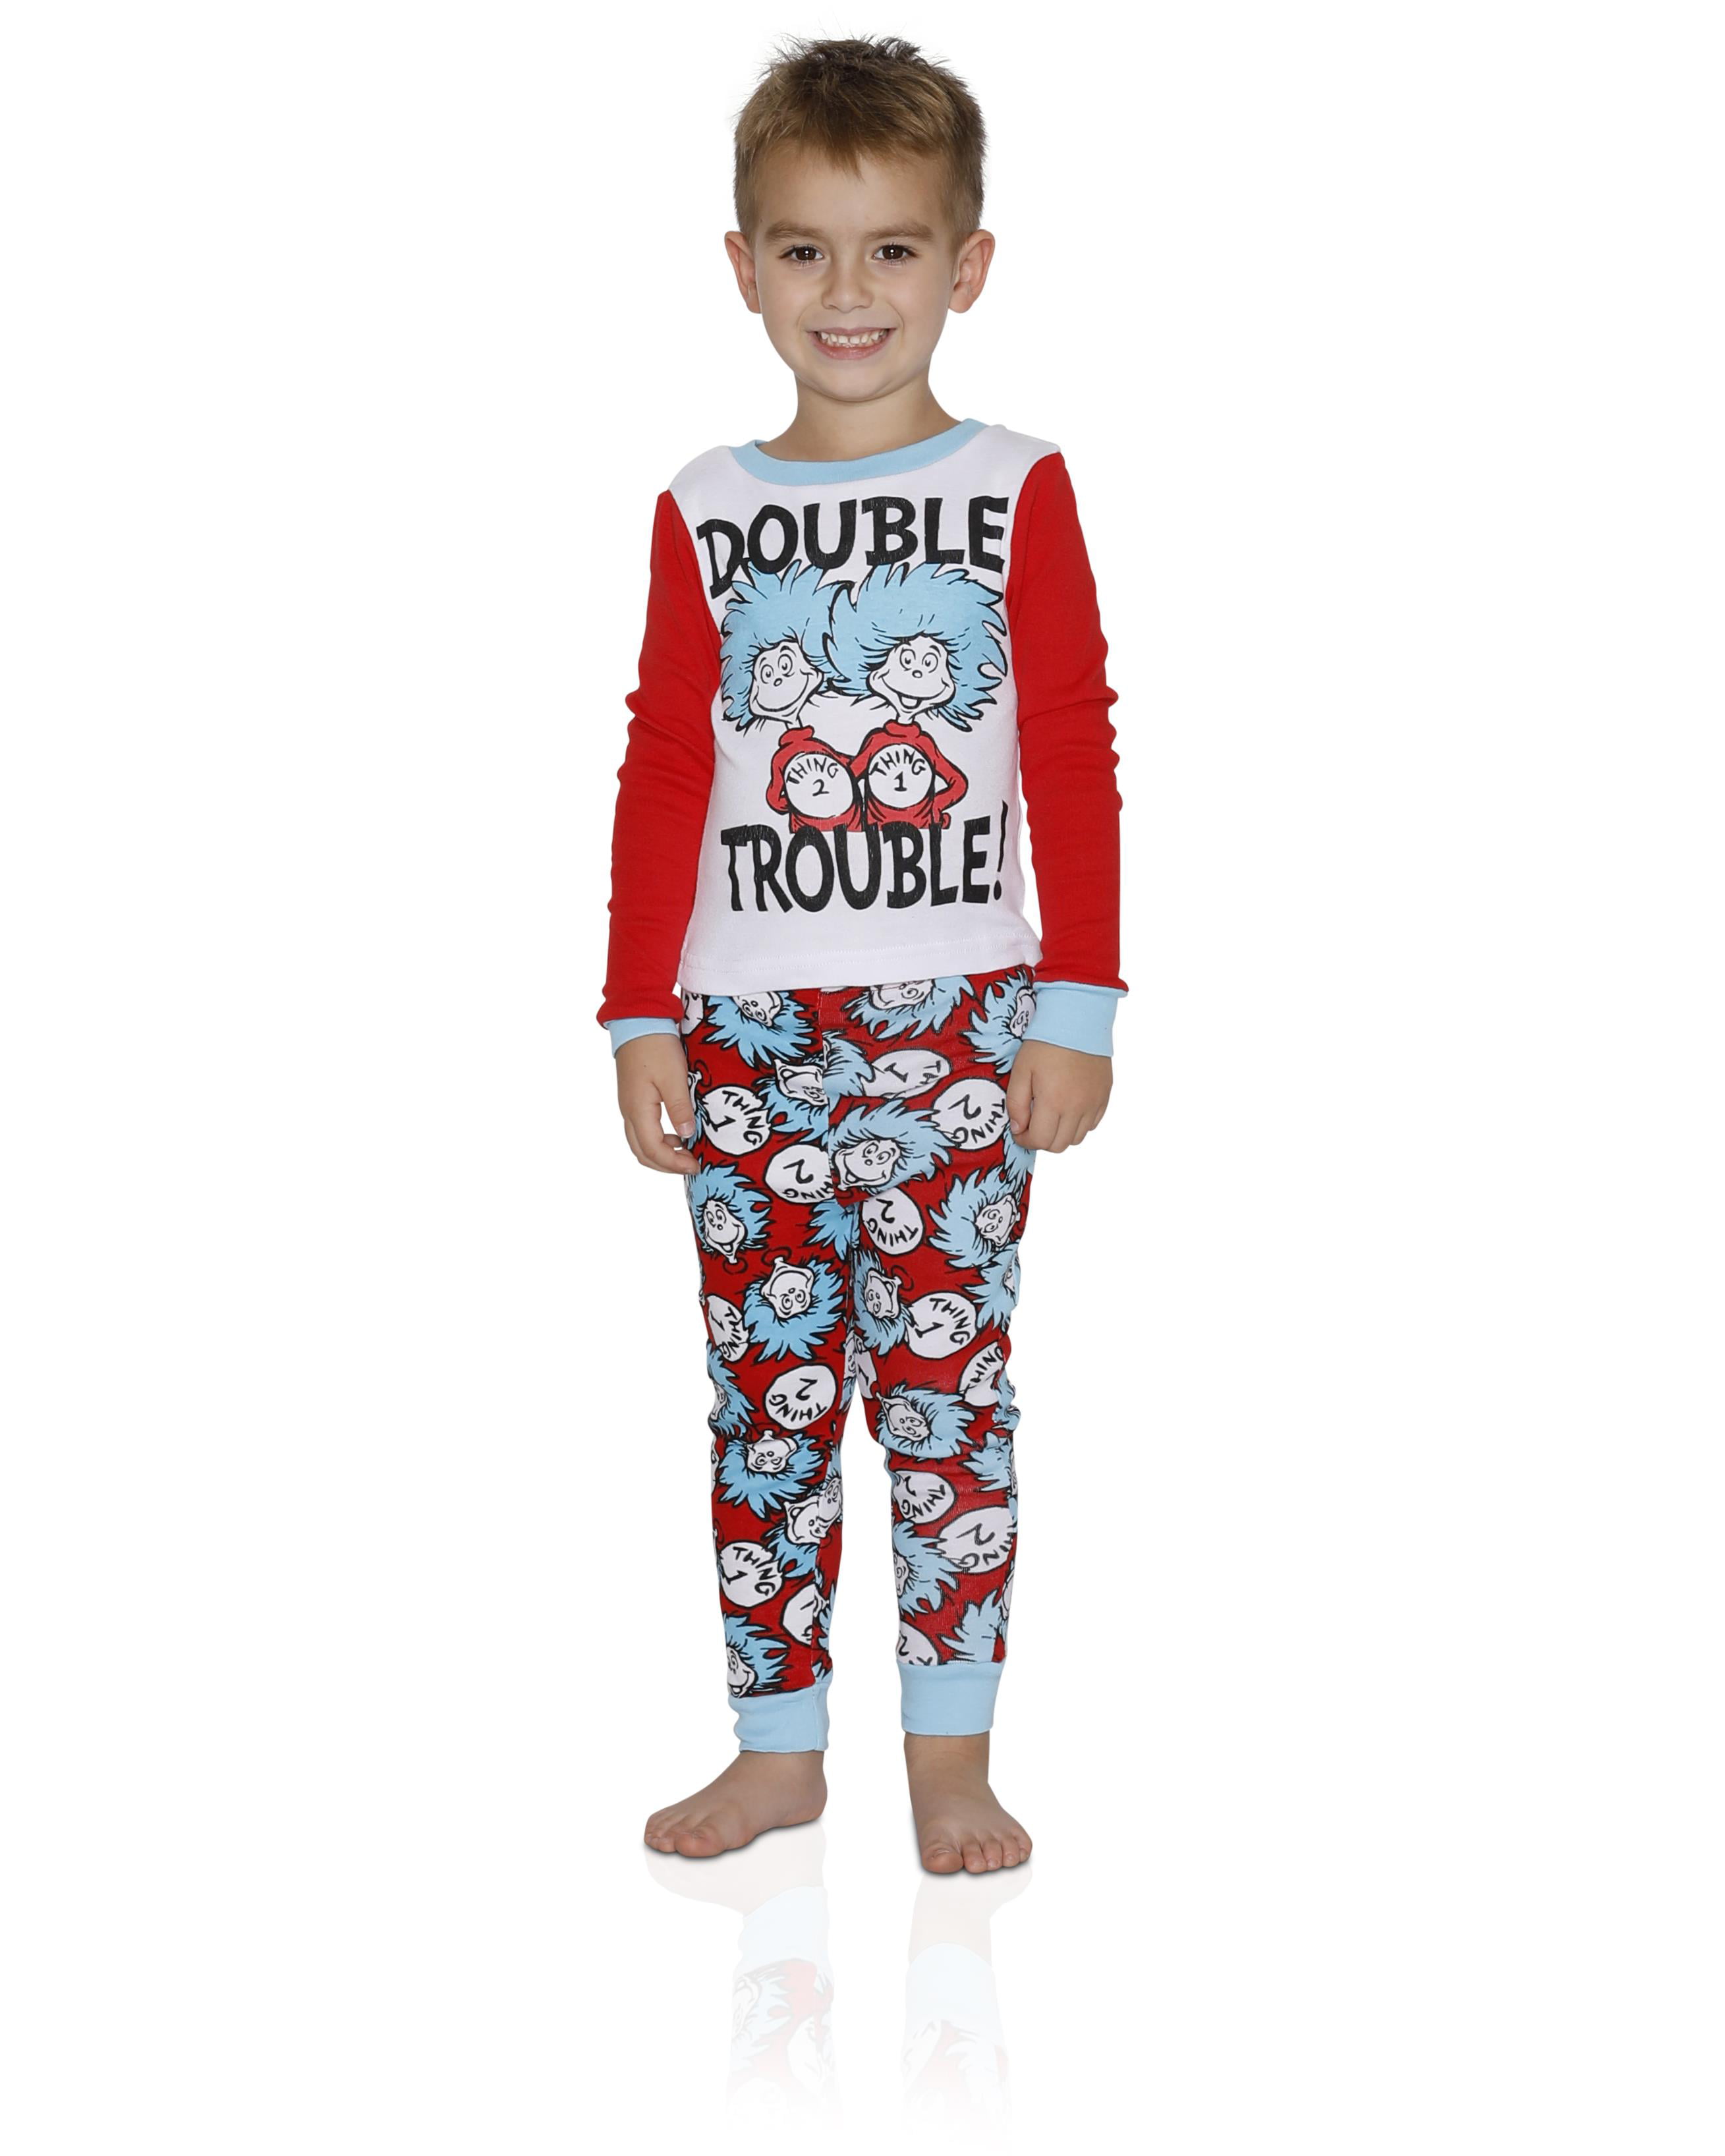 BOOPH Boys Girls 2 Piece Pajamas Set Kids Toddler Long Sleeves Cotton Sleepwear